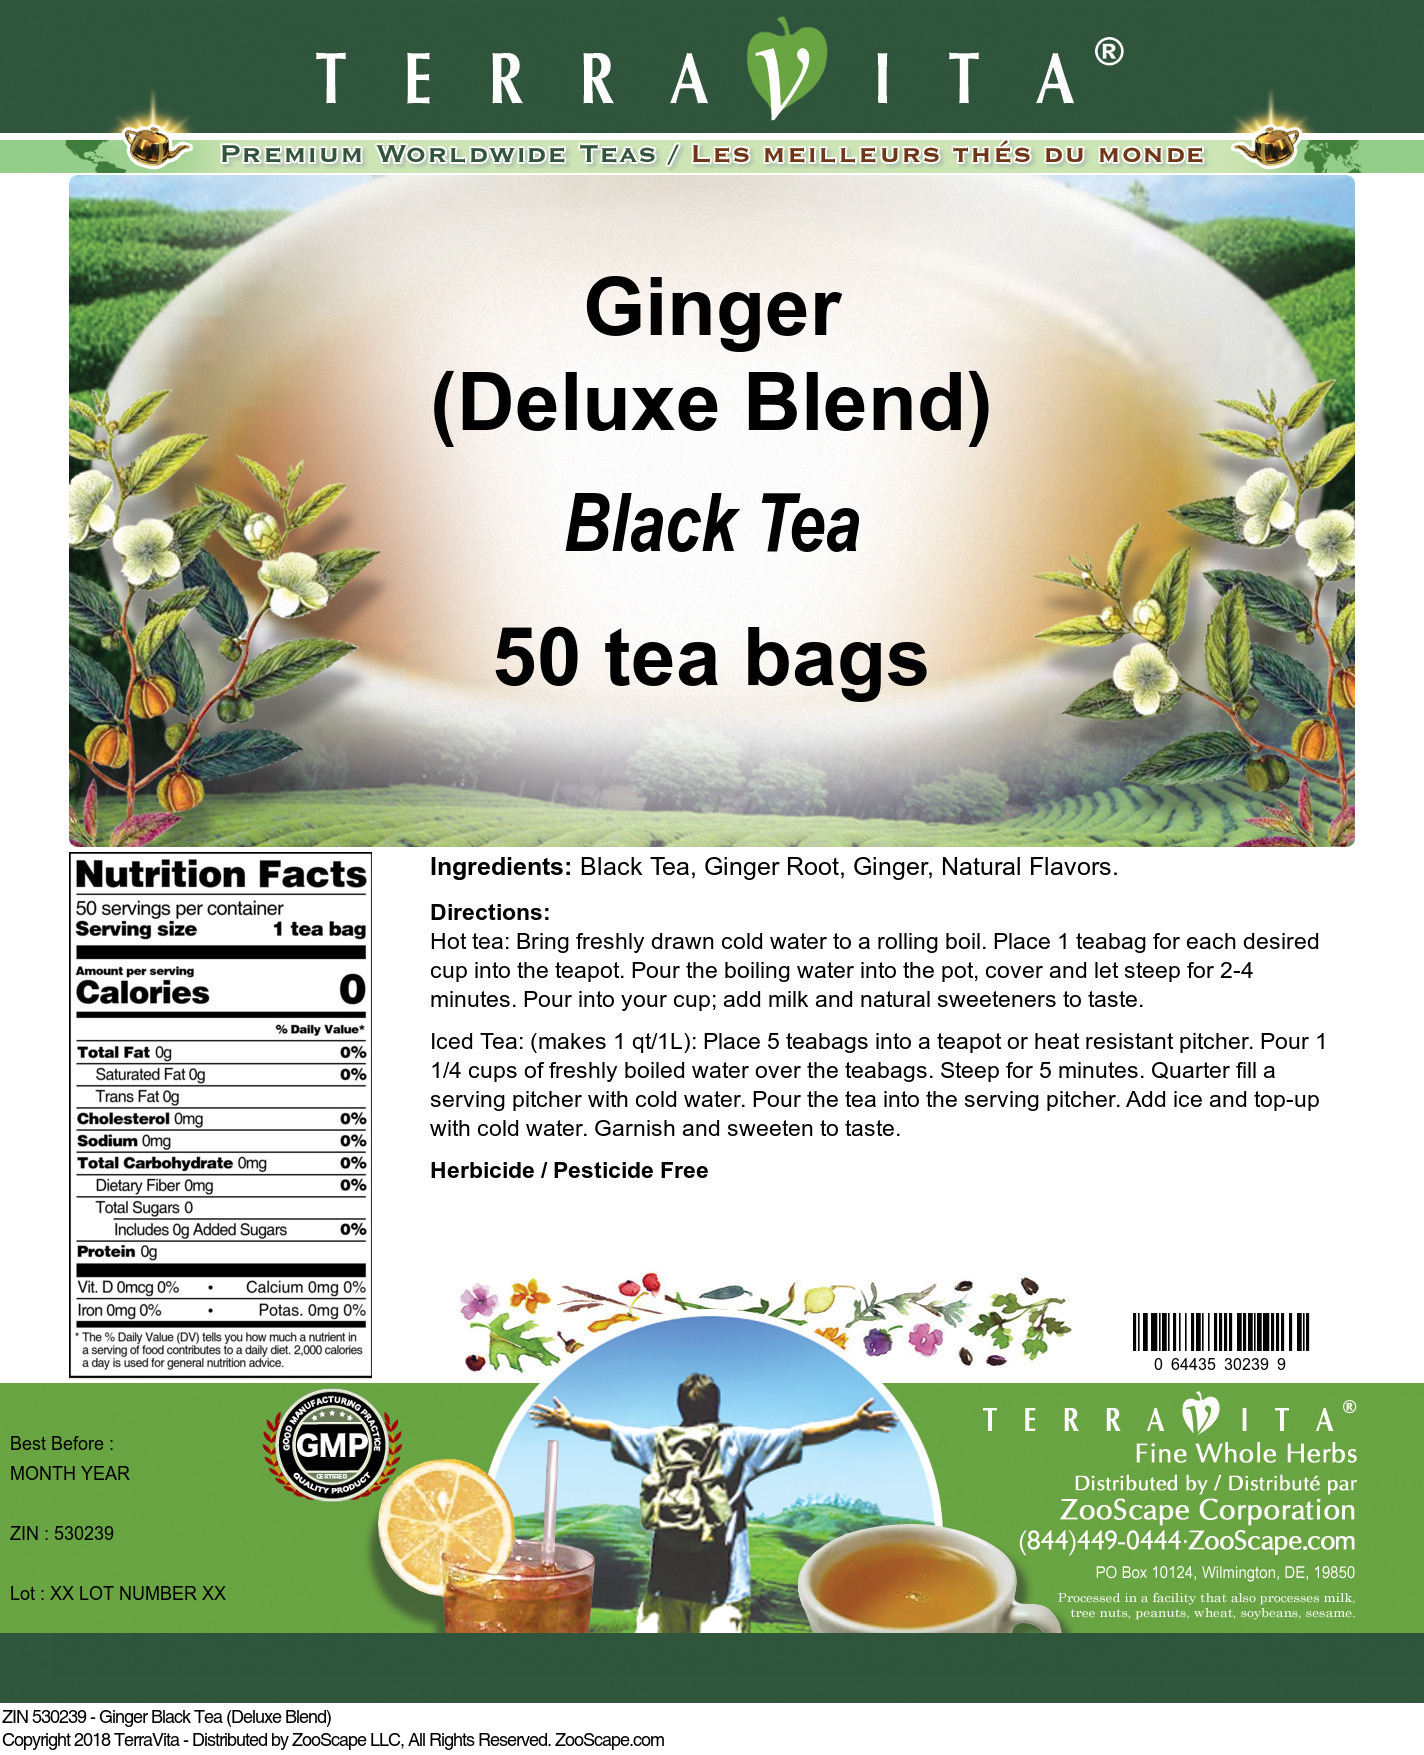 Ginger Black Tea (Deluxe Blend) - Label